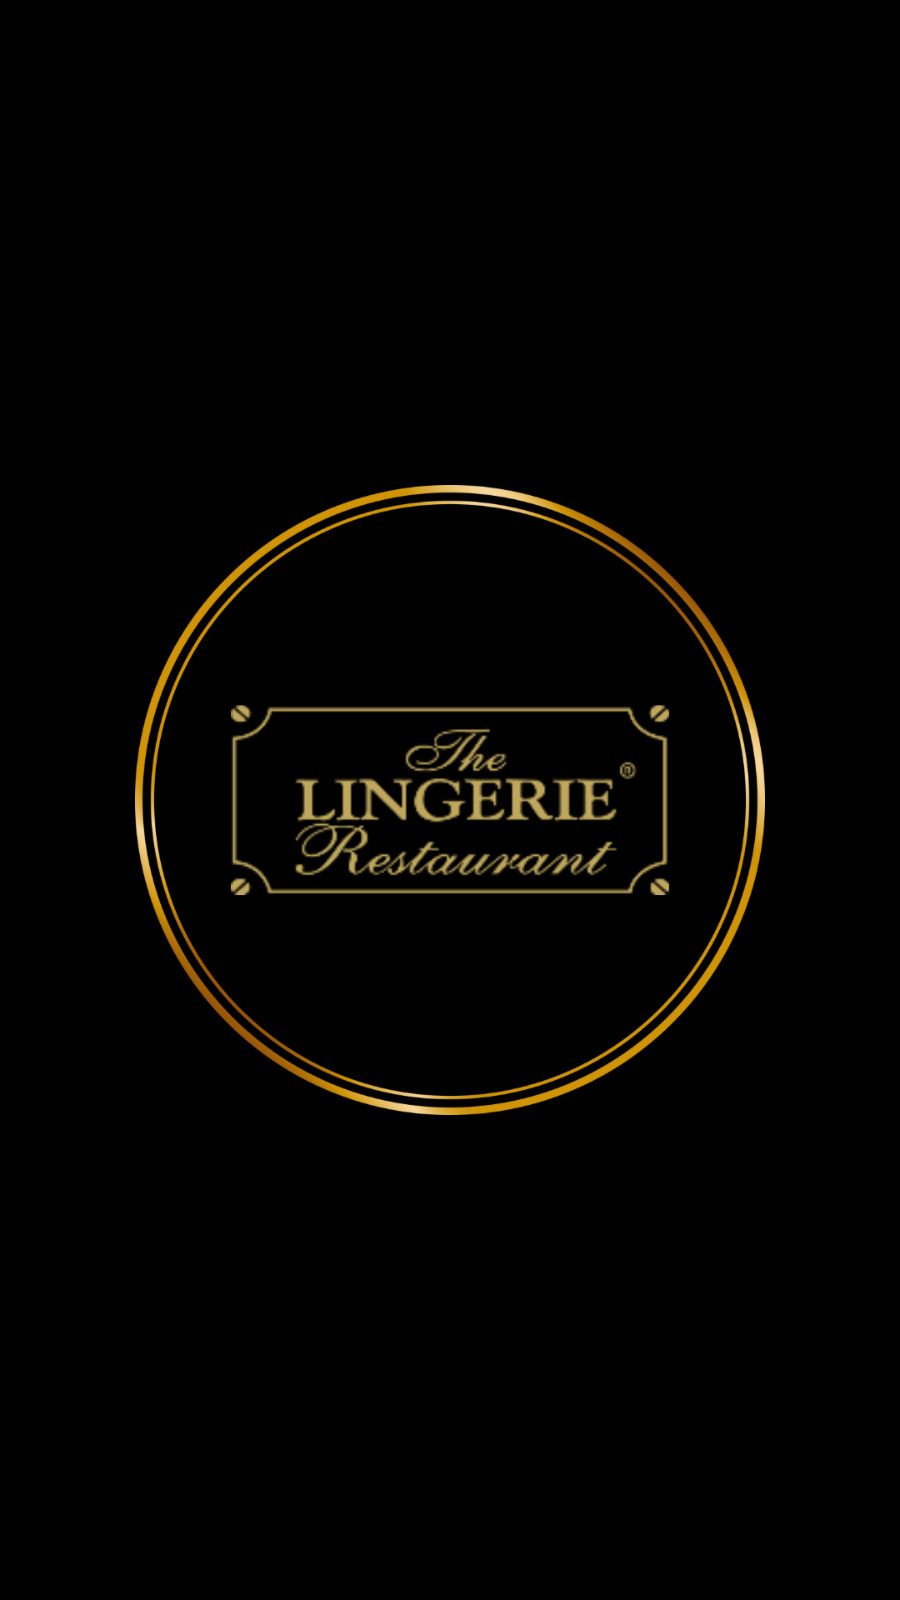 The Lingerie Restaurant logo